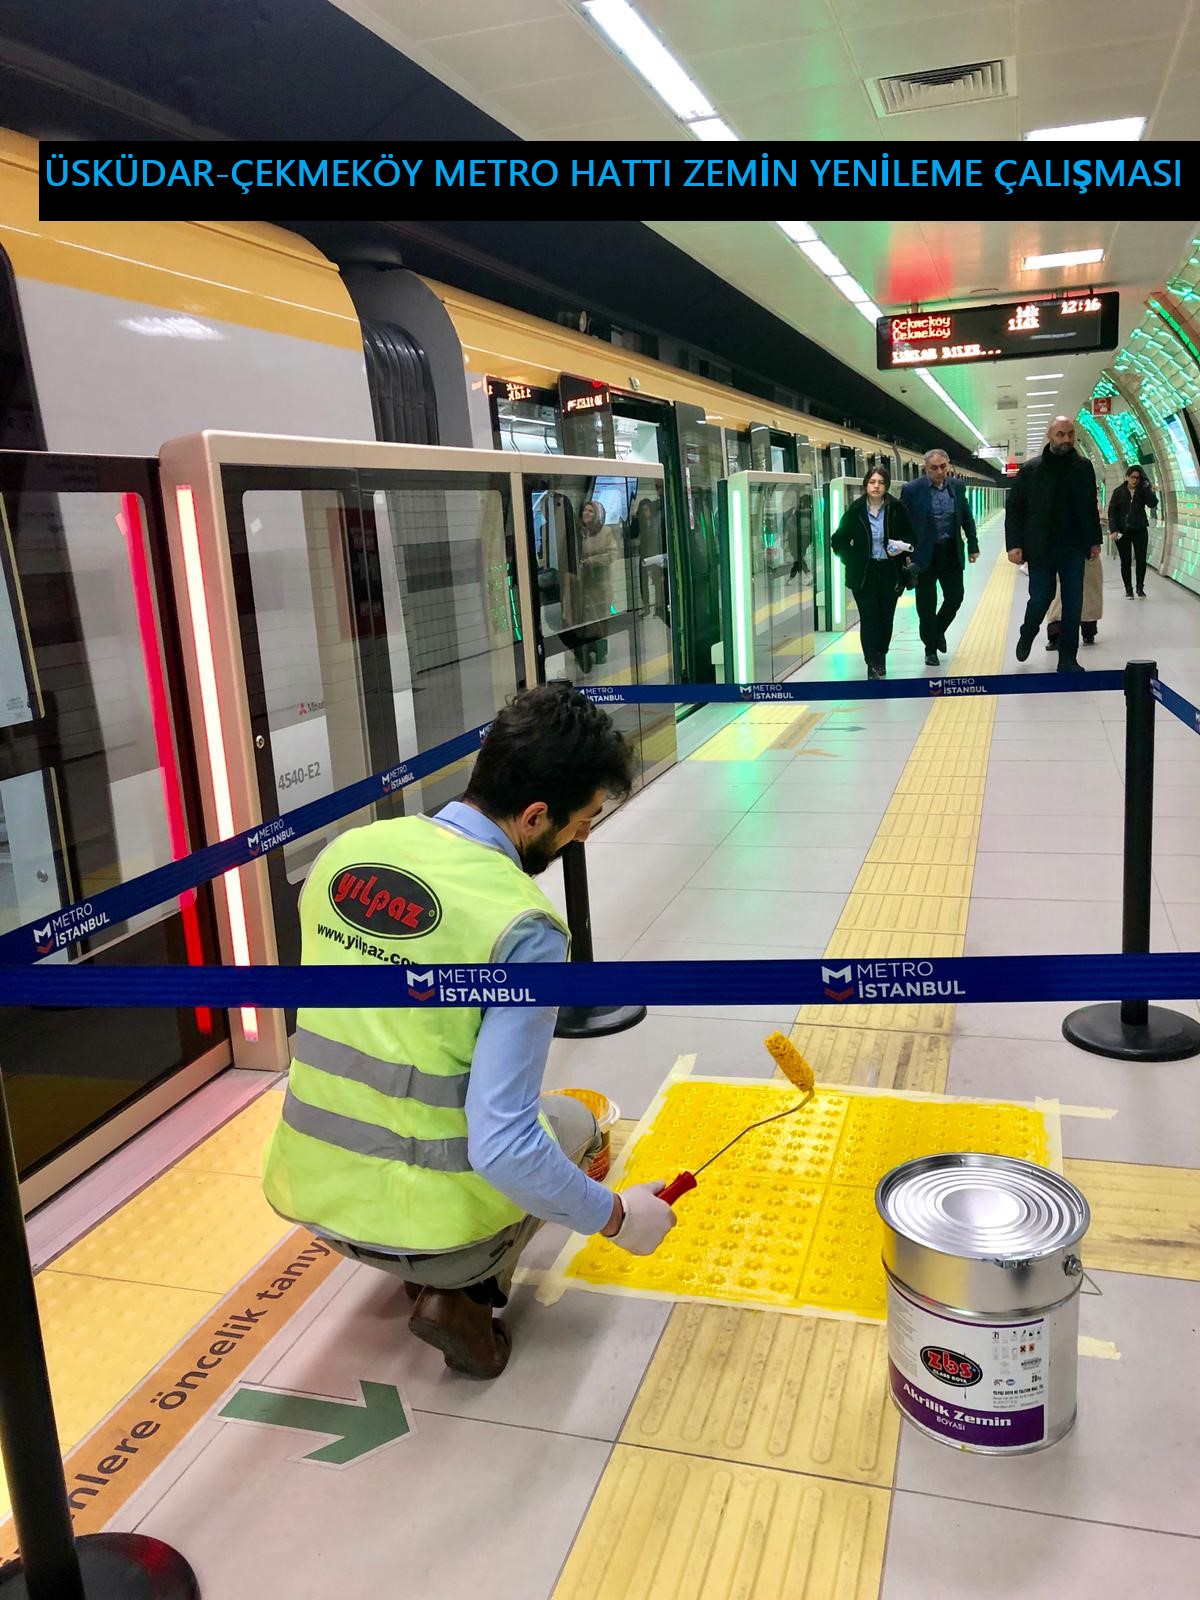 (M5) Üsküdar-Çekmeköy Metro Hattı Peronlarının Zeminlerinde ZBS ile İyileştirme uygulaması